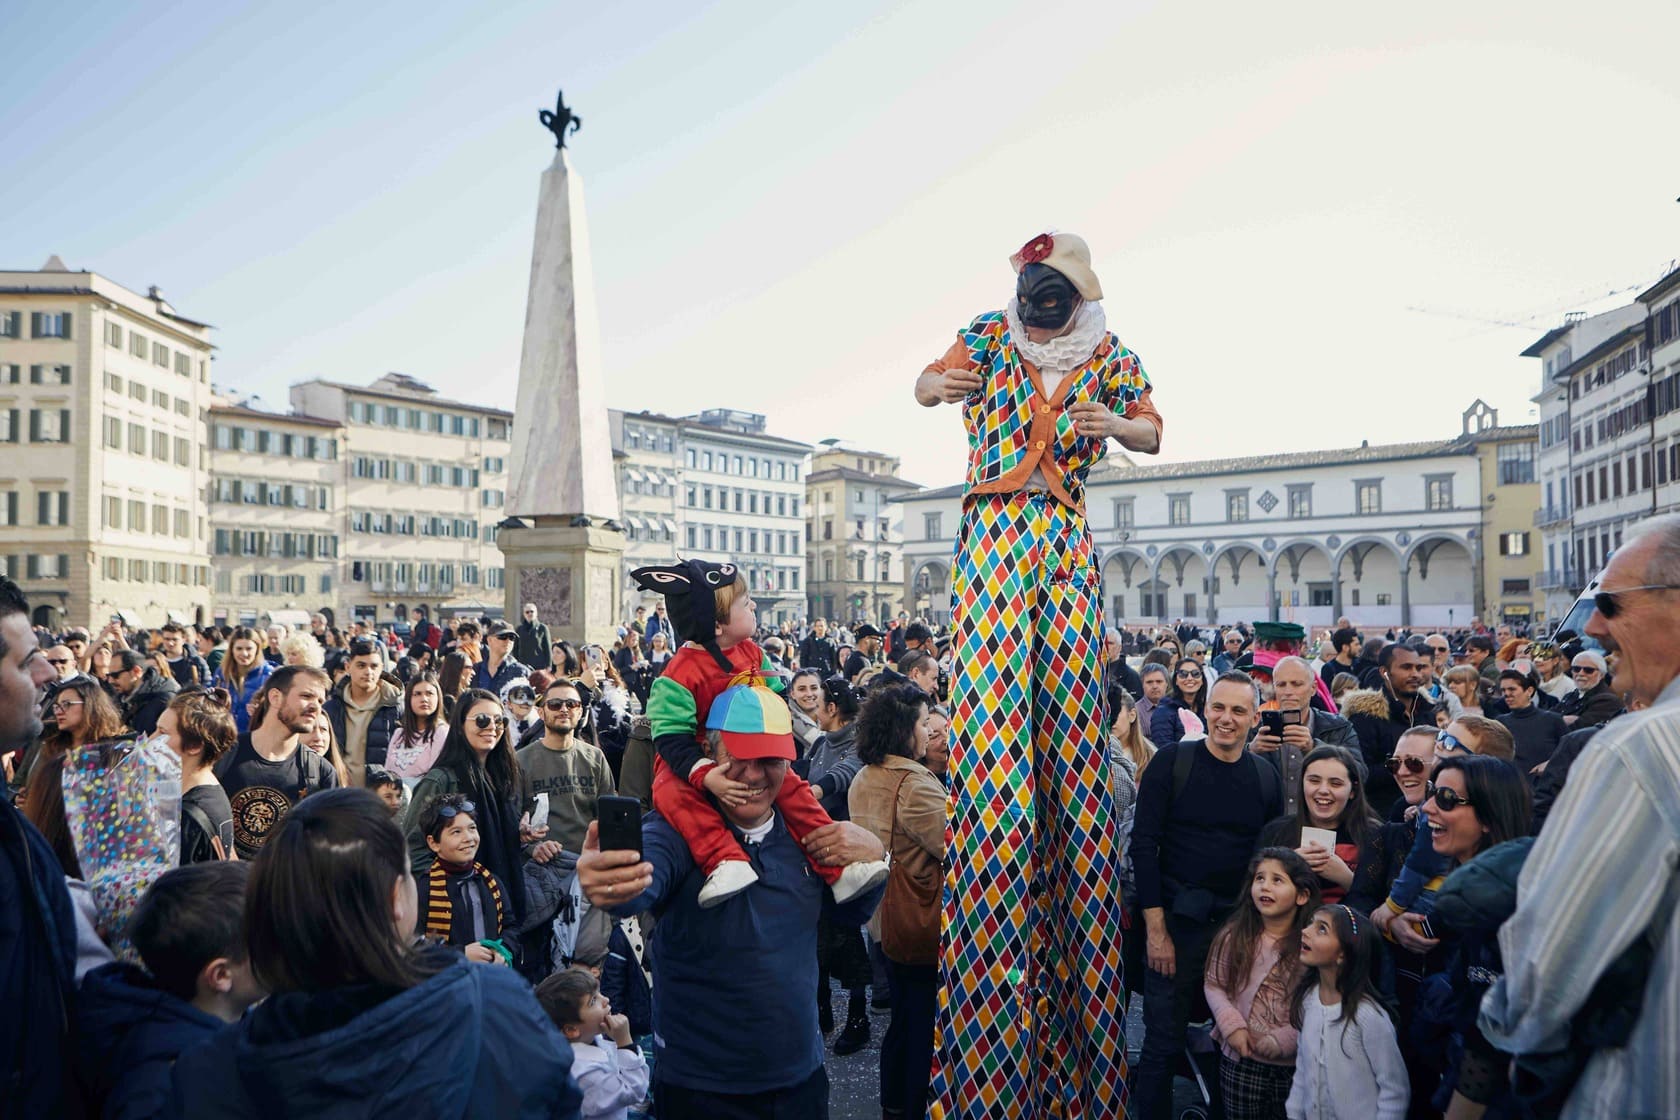 Carnevale in una piazza a Firenze: Clown su trampoli in costume da arlecchino che diverte la folla.